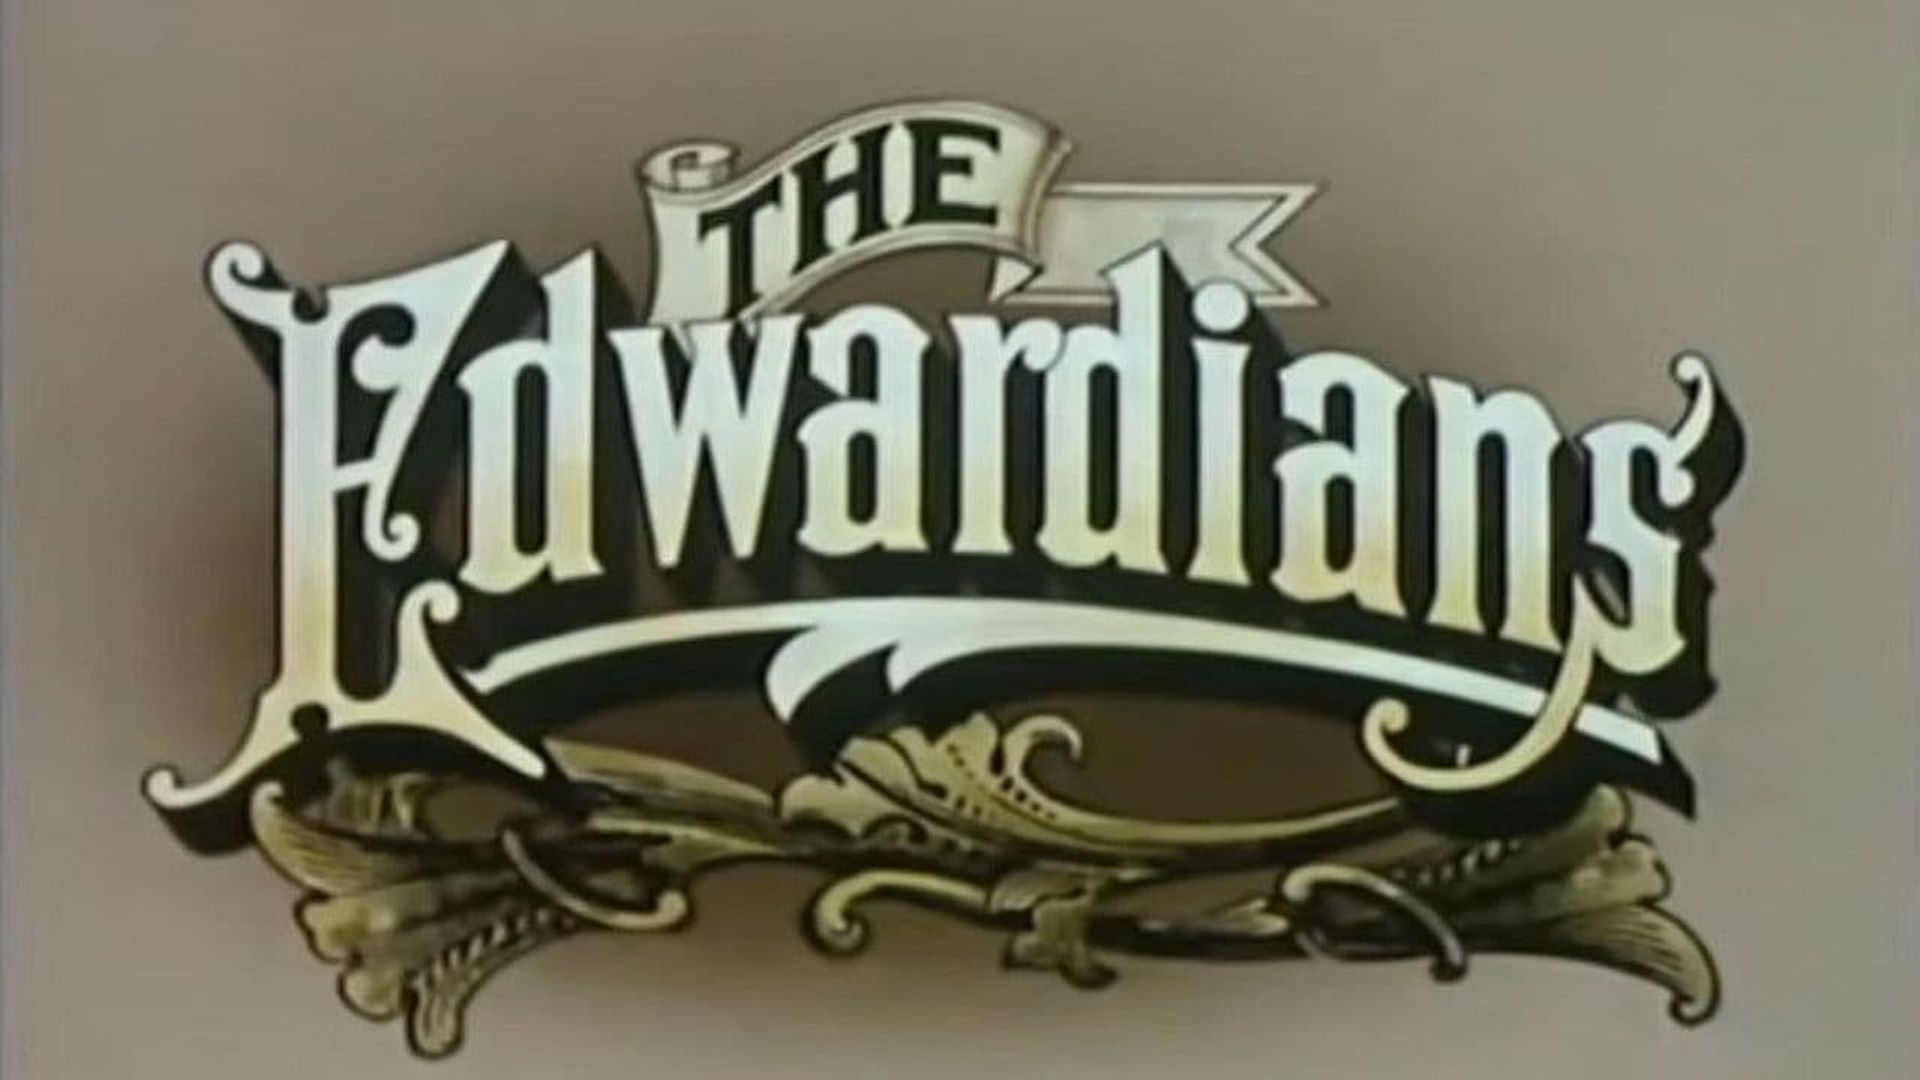 The Edwardians background